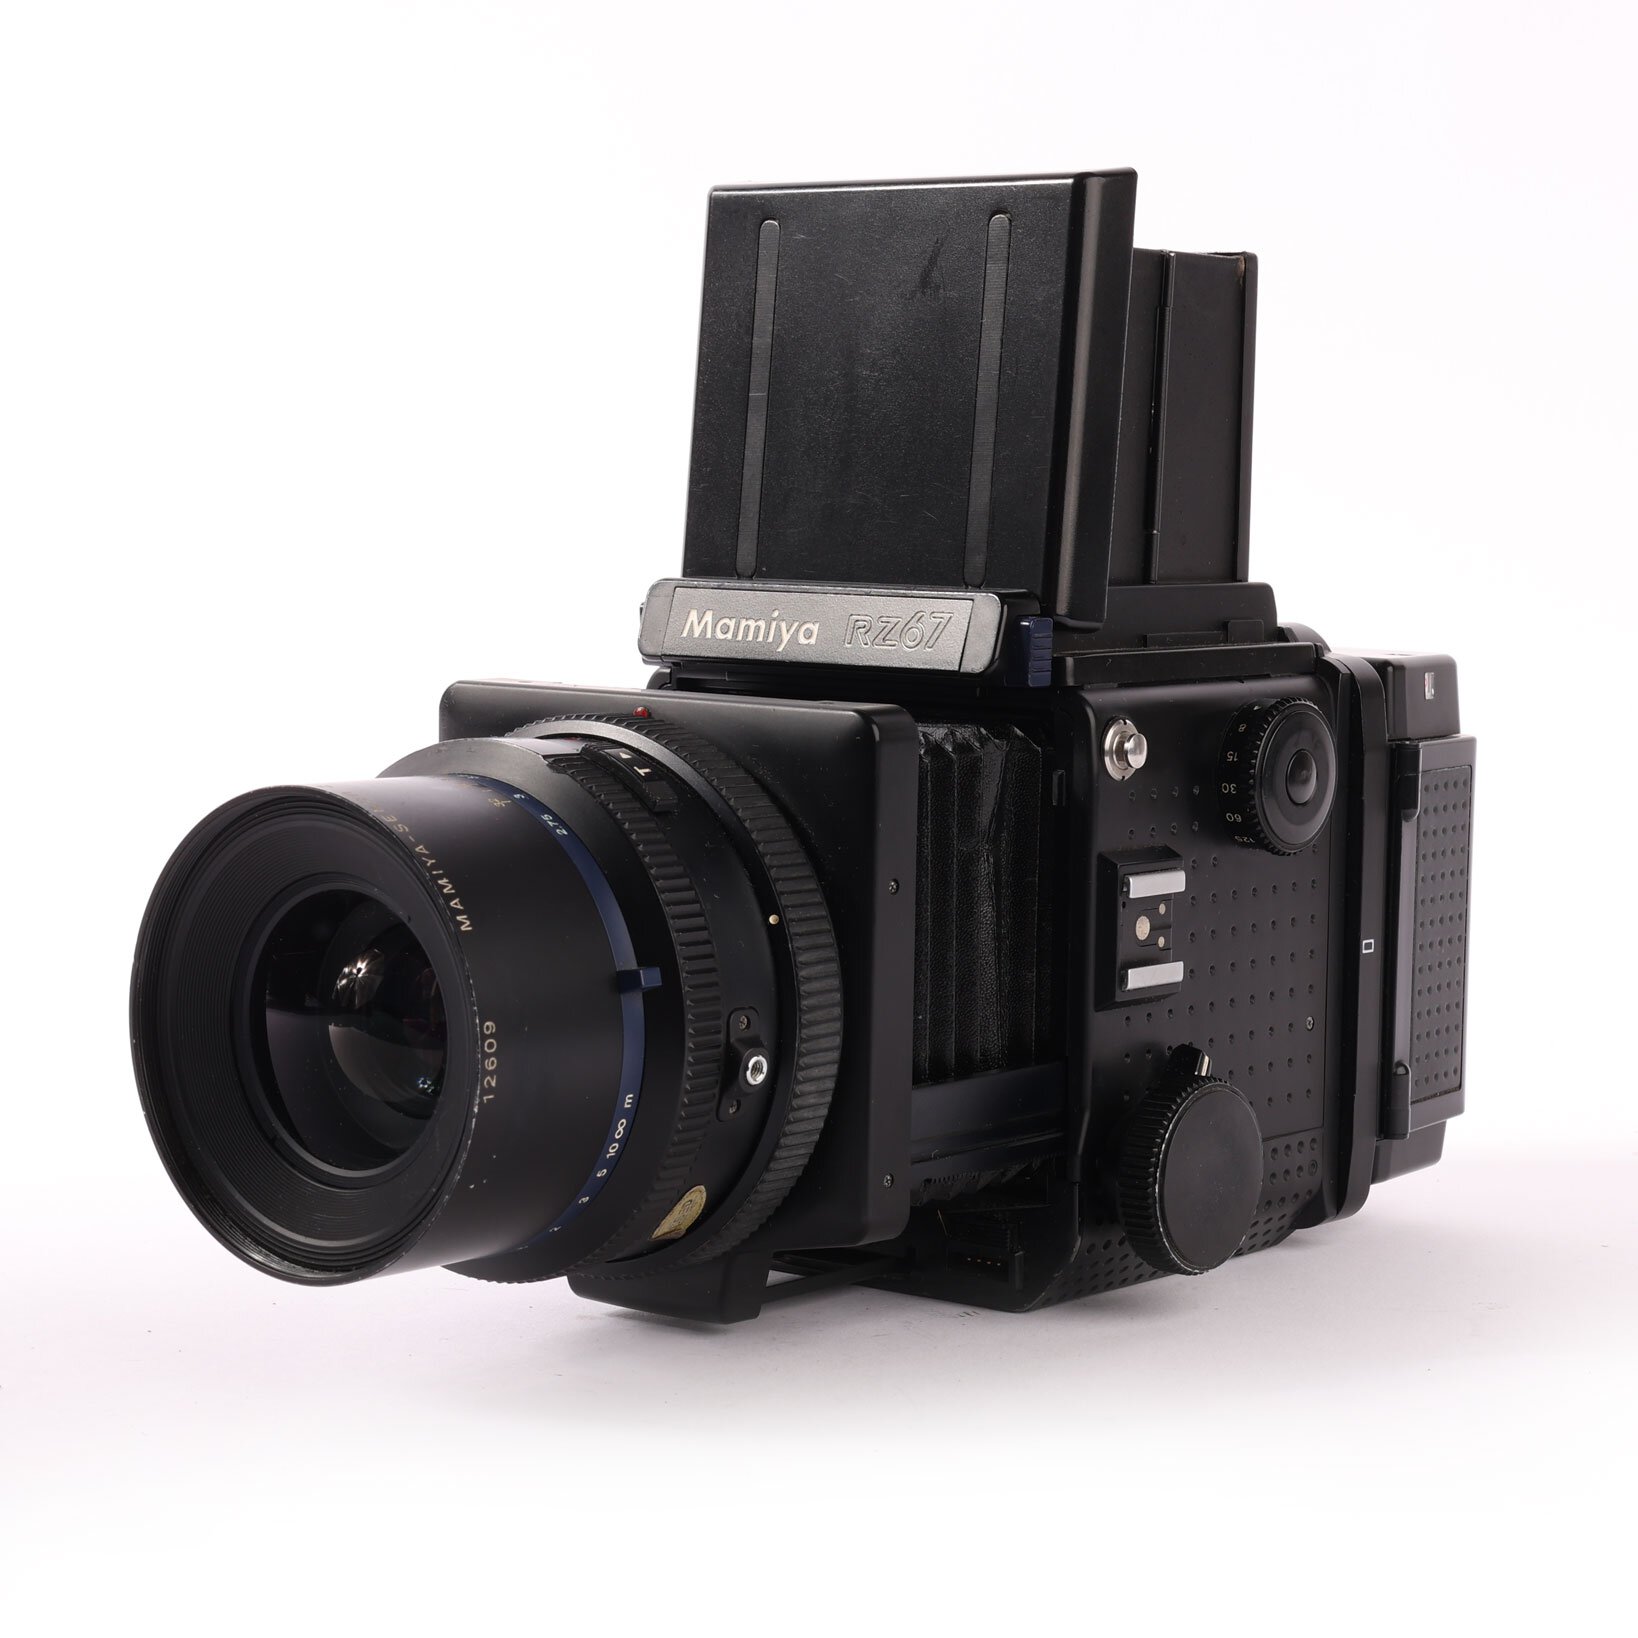 Mamiya RZ67 Professional Winder II Sekor Z 3.5/90mm 5.2/100-200mm prisma sucher